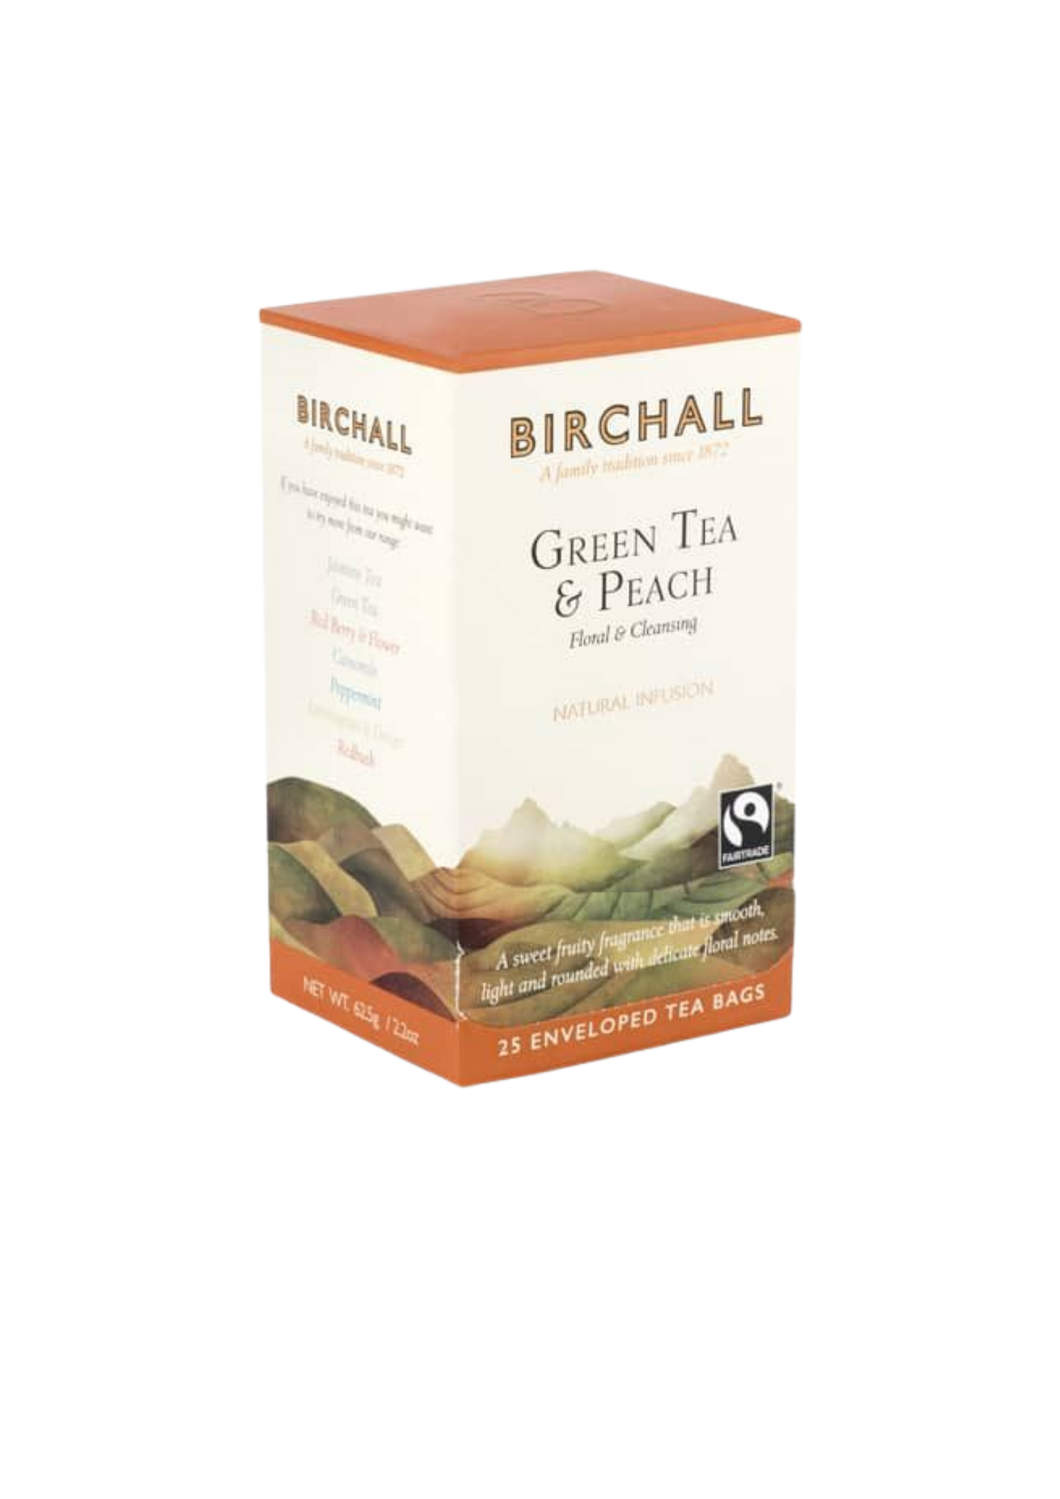 BIRCHALL GREEN TEA & PEACH FLORAL & CLEANSING 15 TEA BAGS